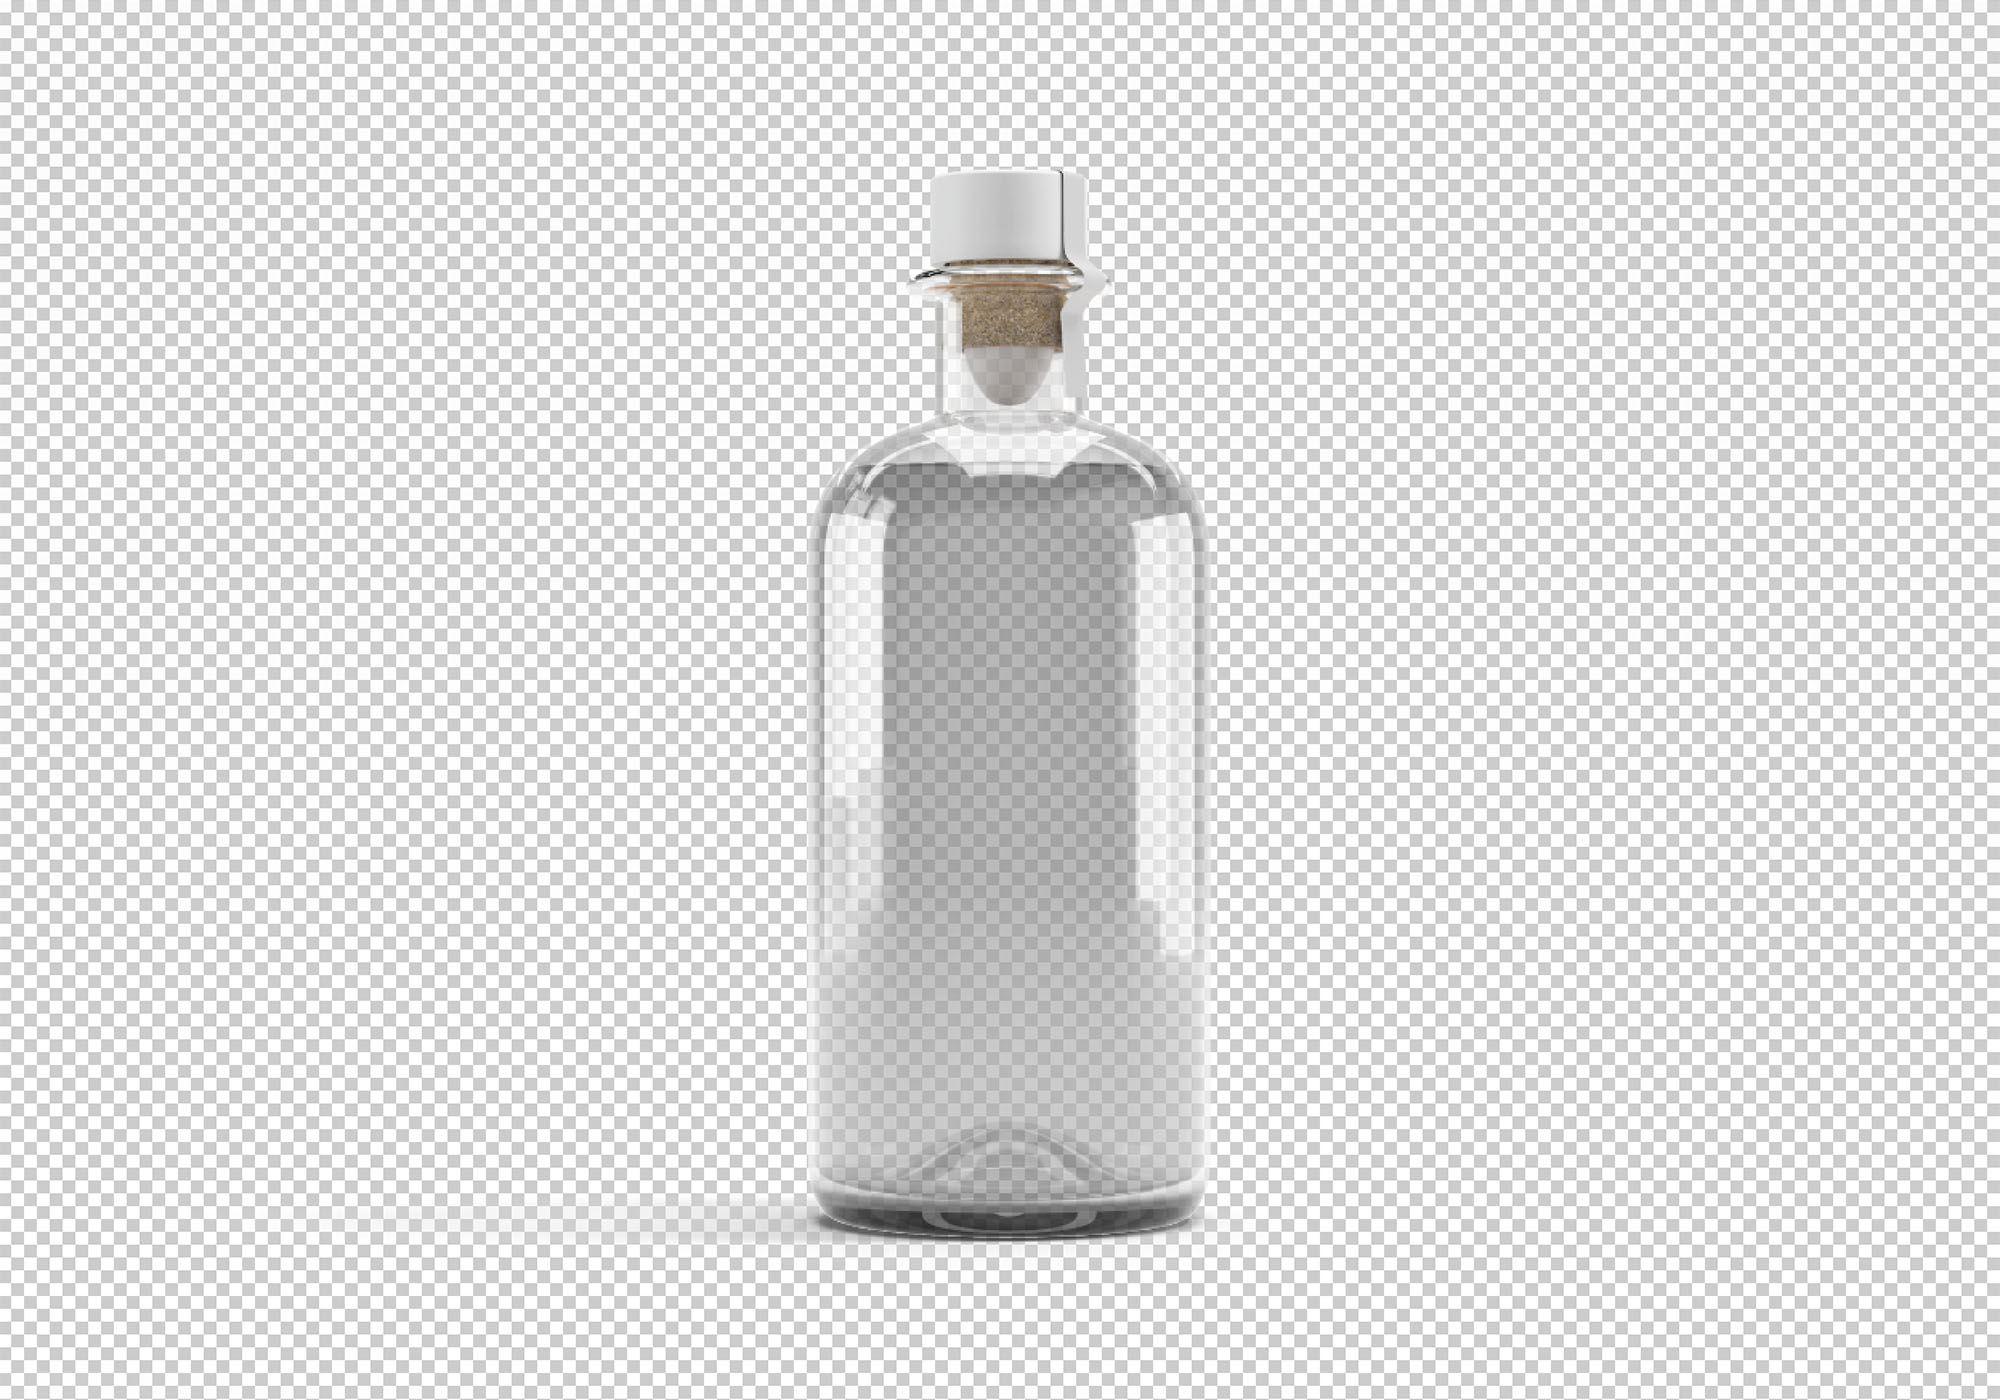 橄榄油瓶贴图样机模版素材 Olive Oil Bottle